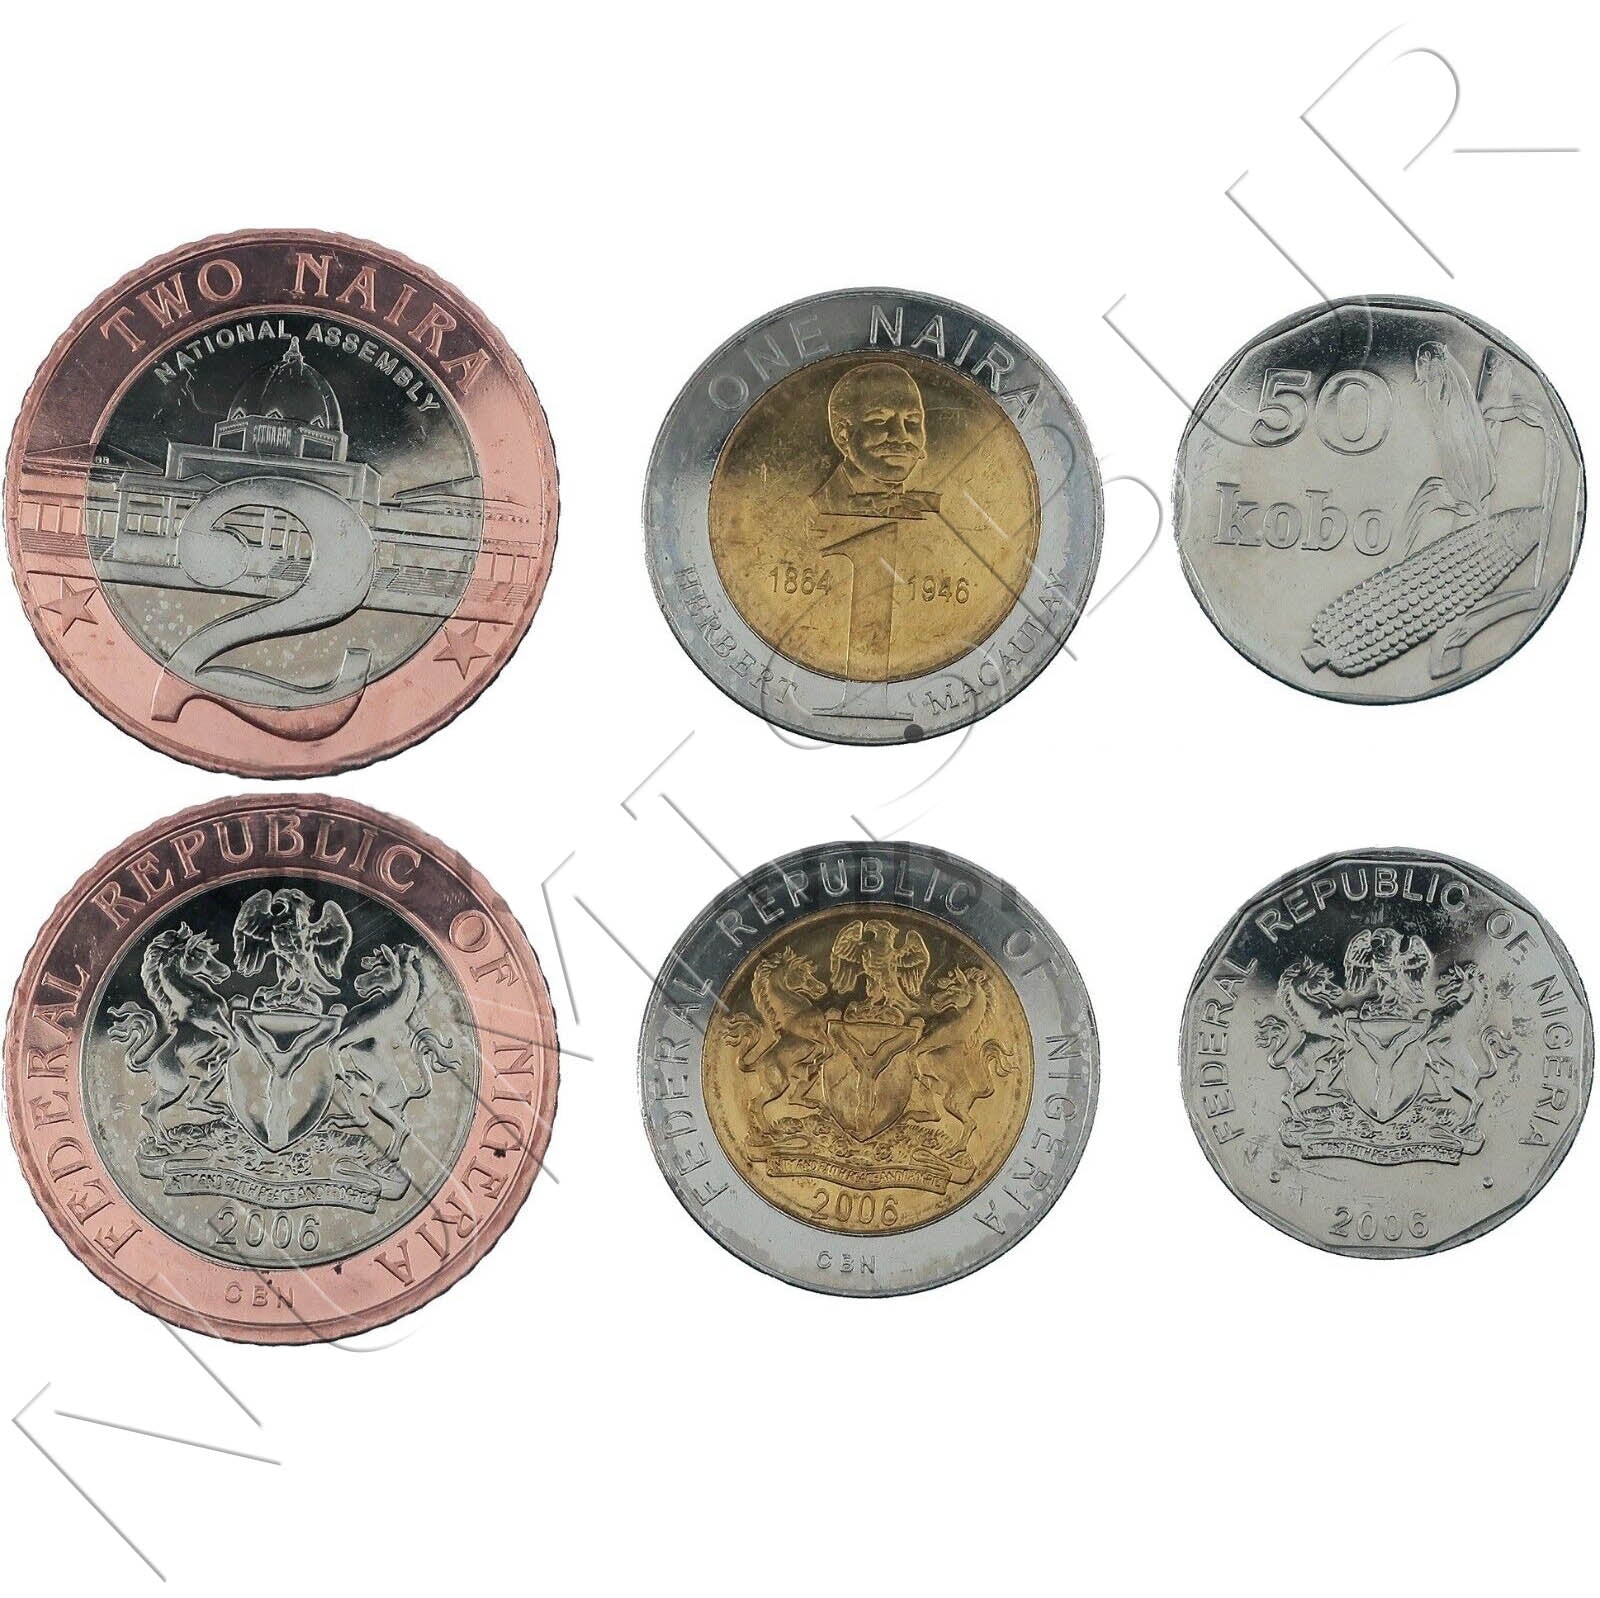 Tira NIGERIA 2006 (3 monedas)